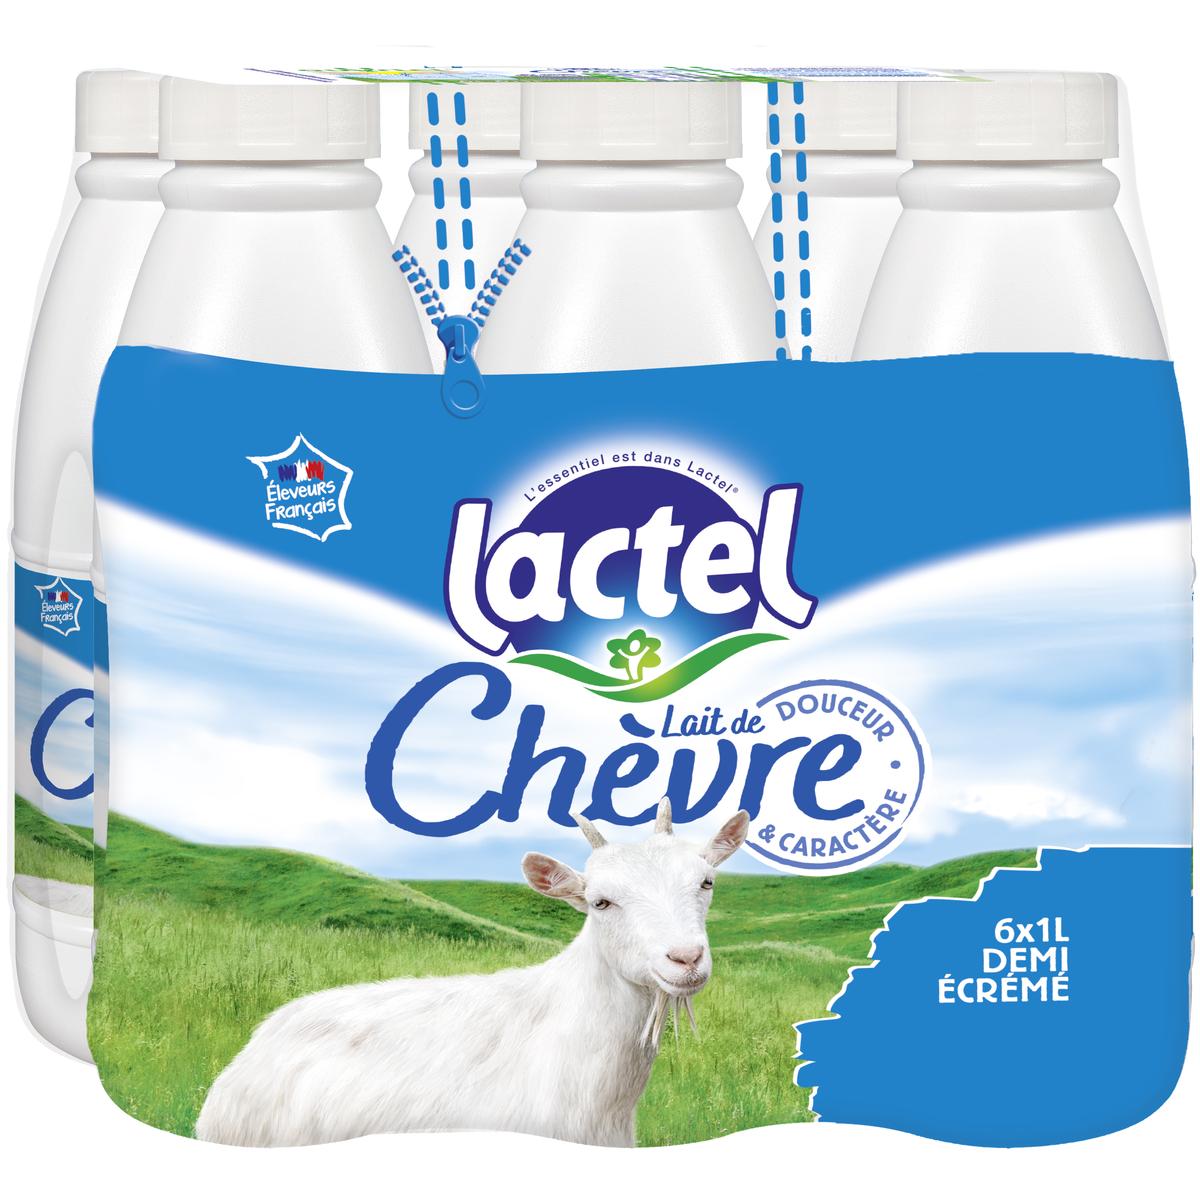 Lot spécial lait de chèvre